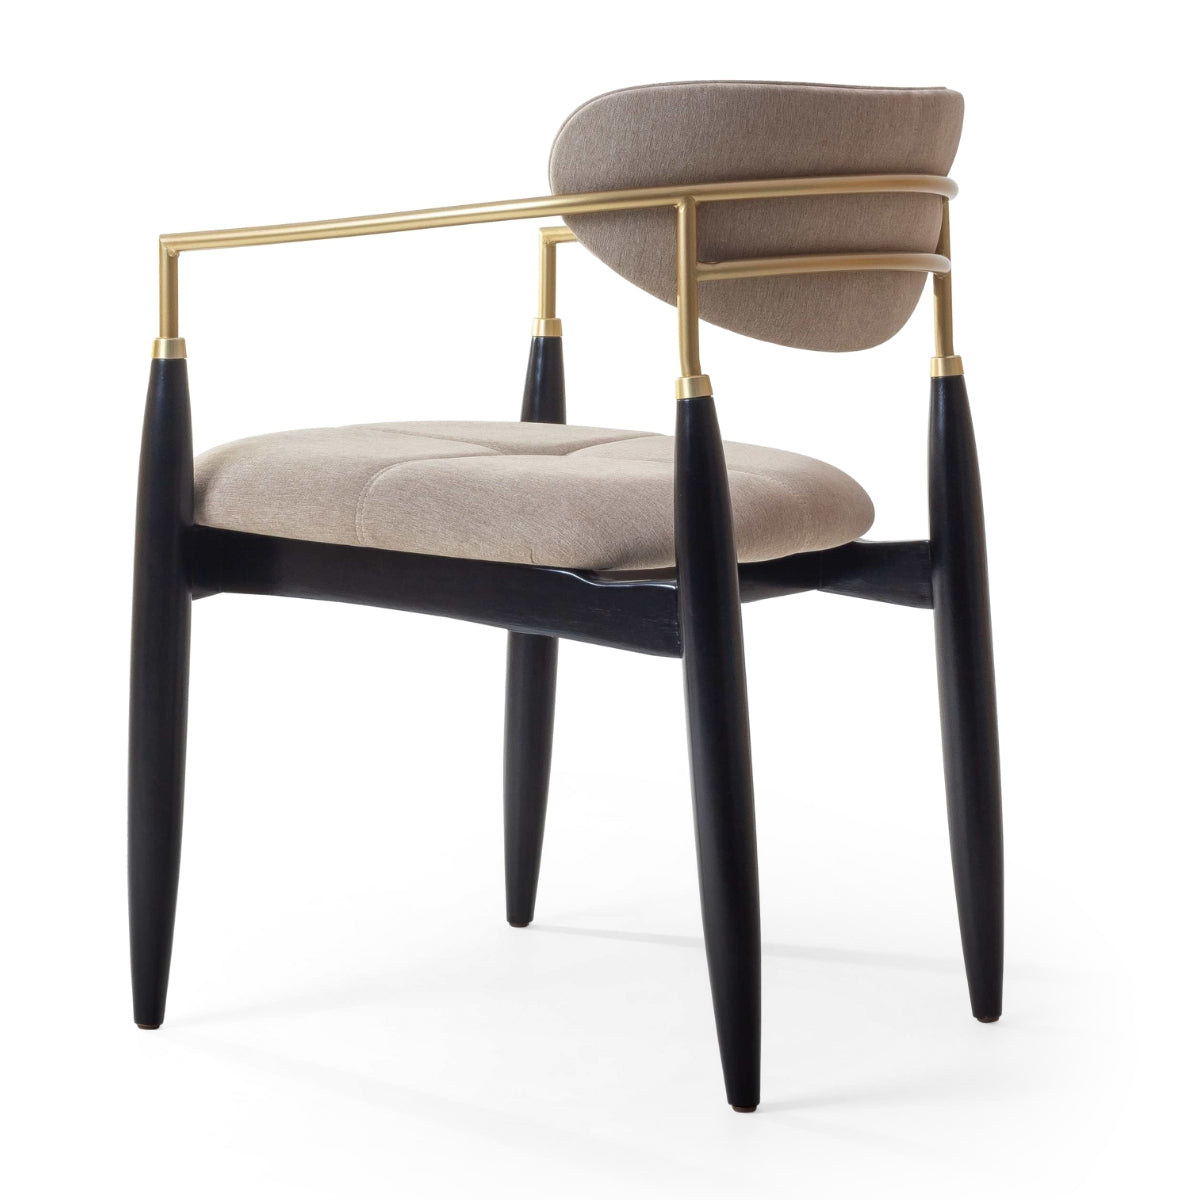 Cadeira Adara com Braço Madeira Preto Fosco Metal Dourado Assento Estofado Tecido BR6000